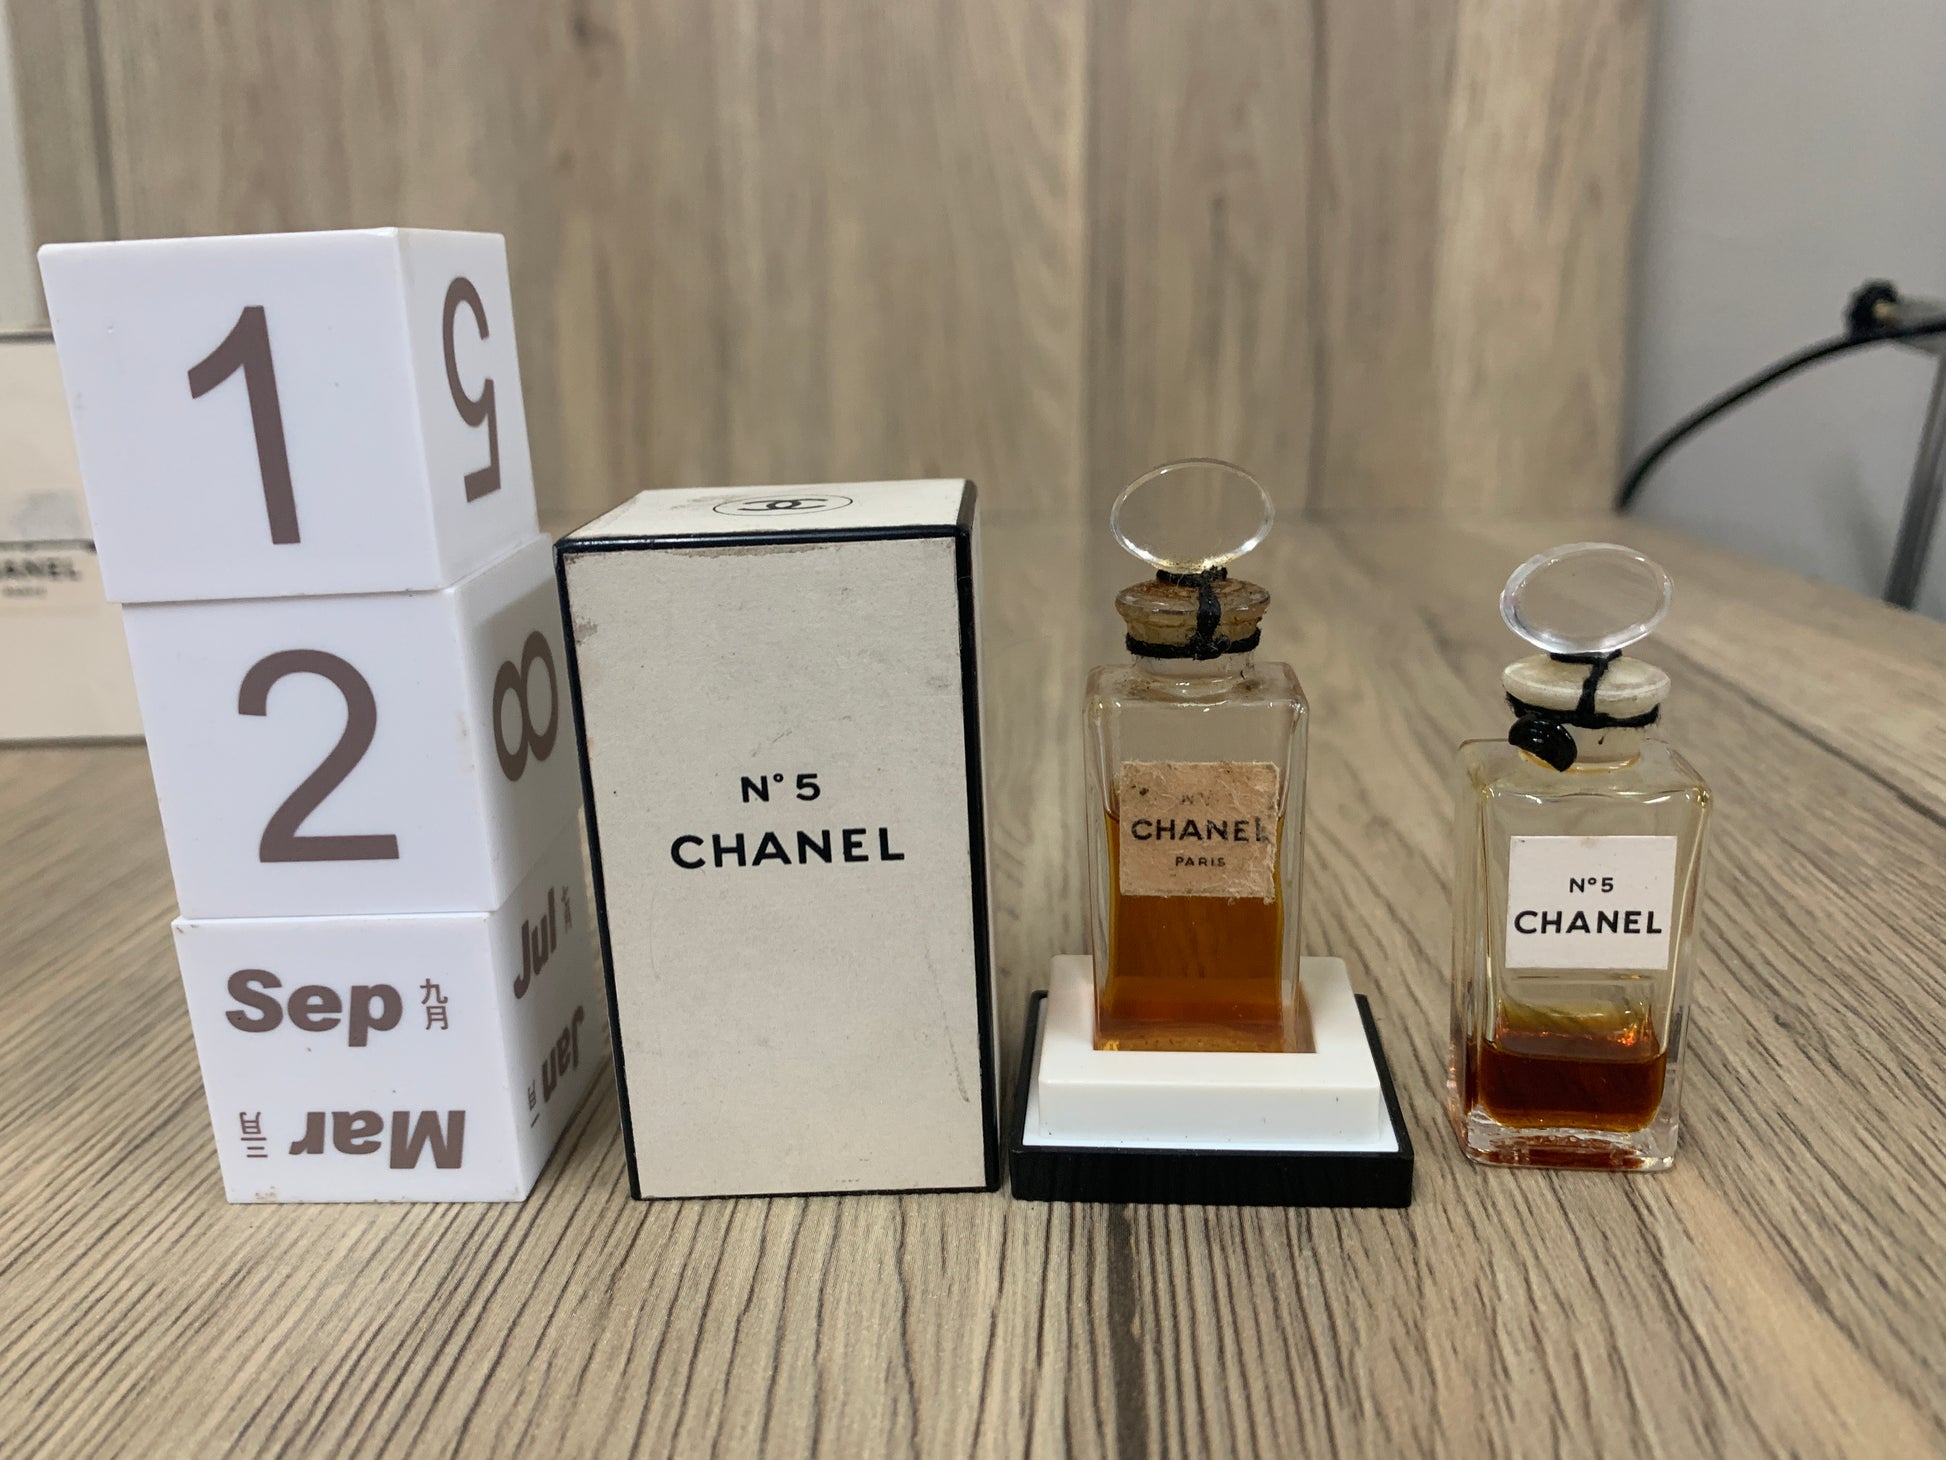 Chanel no.5 Parfum 35ml 1.2 oz pour les cheveux hair mist - 25jun